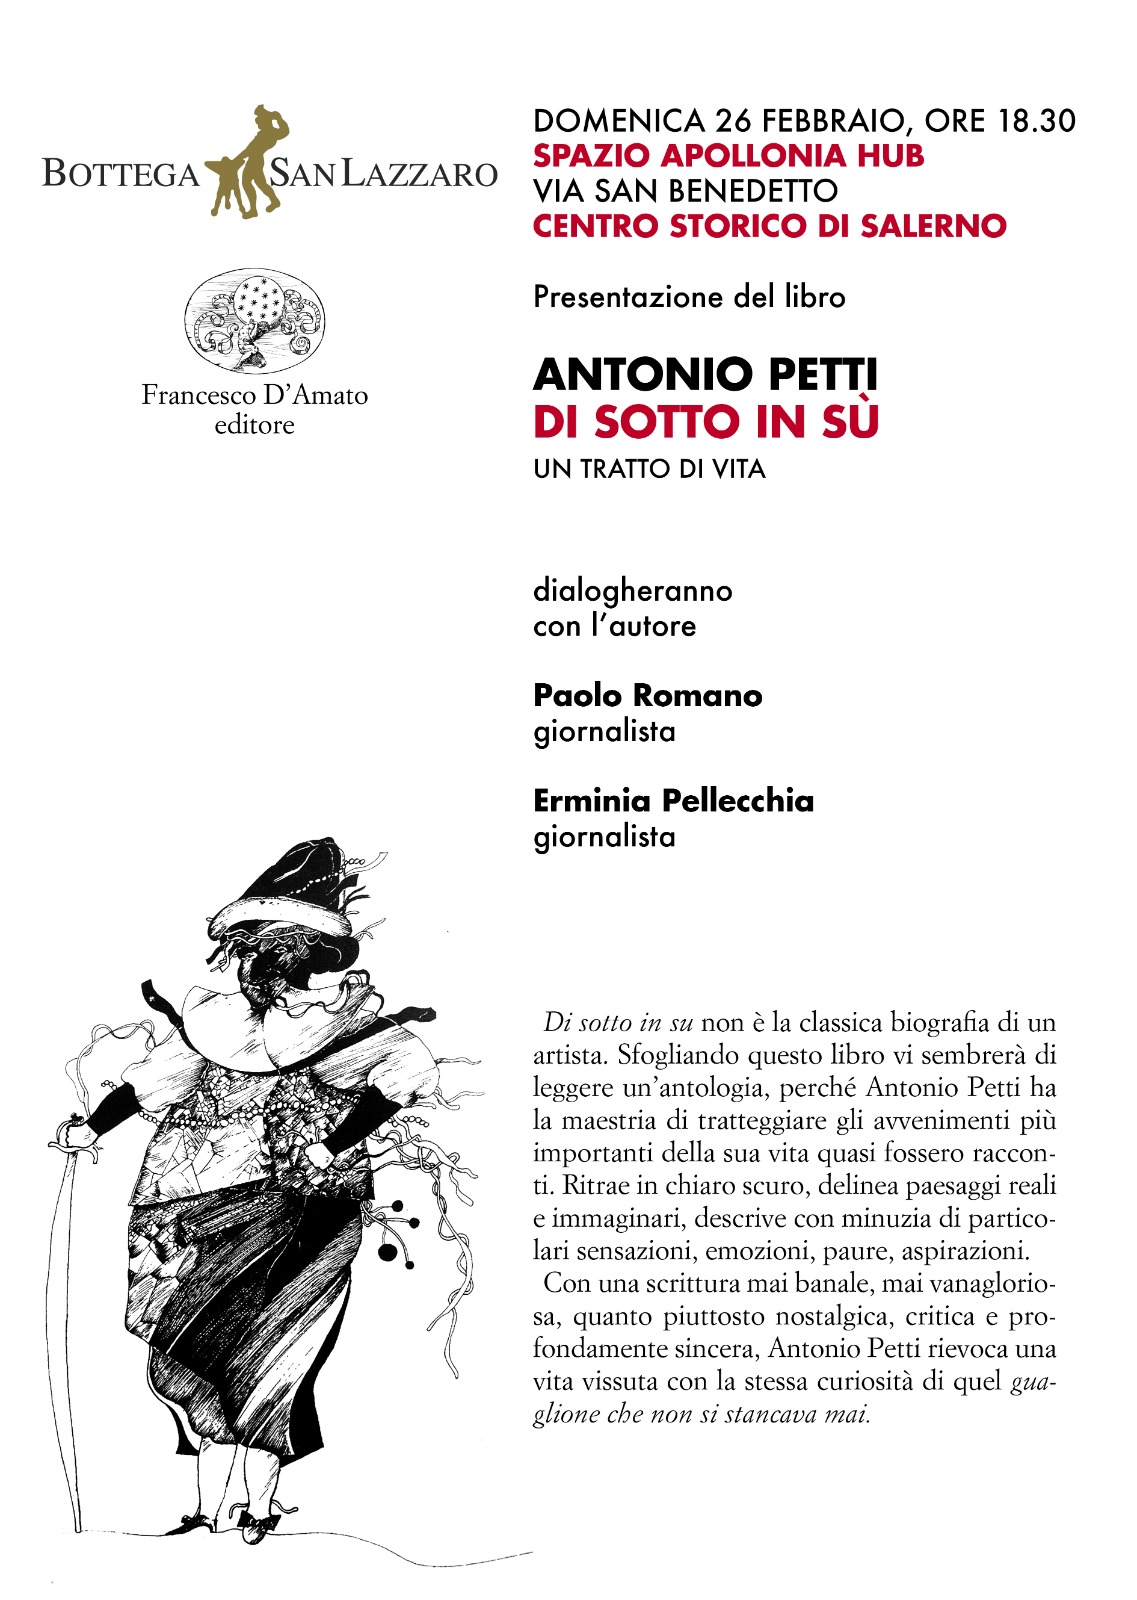 Salerno: a Sant’Apollonia, Antonio Petti con “Di sotto in su”, biografia di un artista “guaglione”